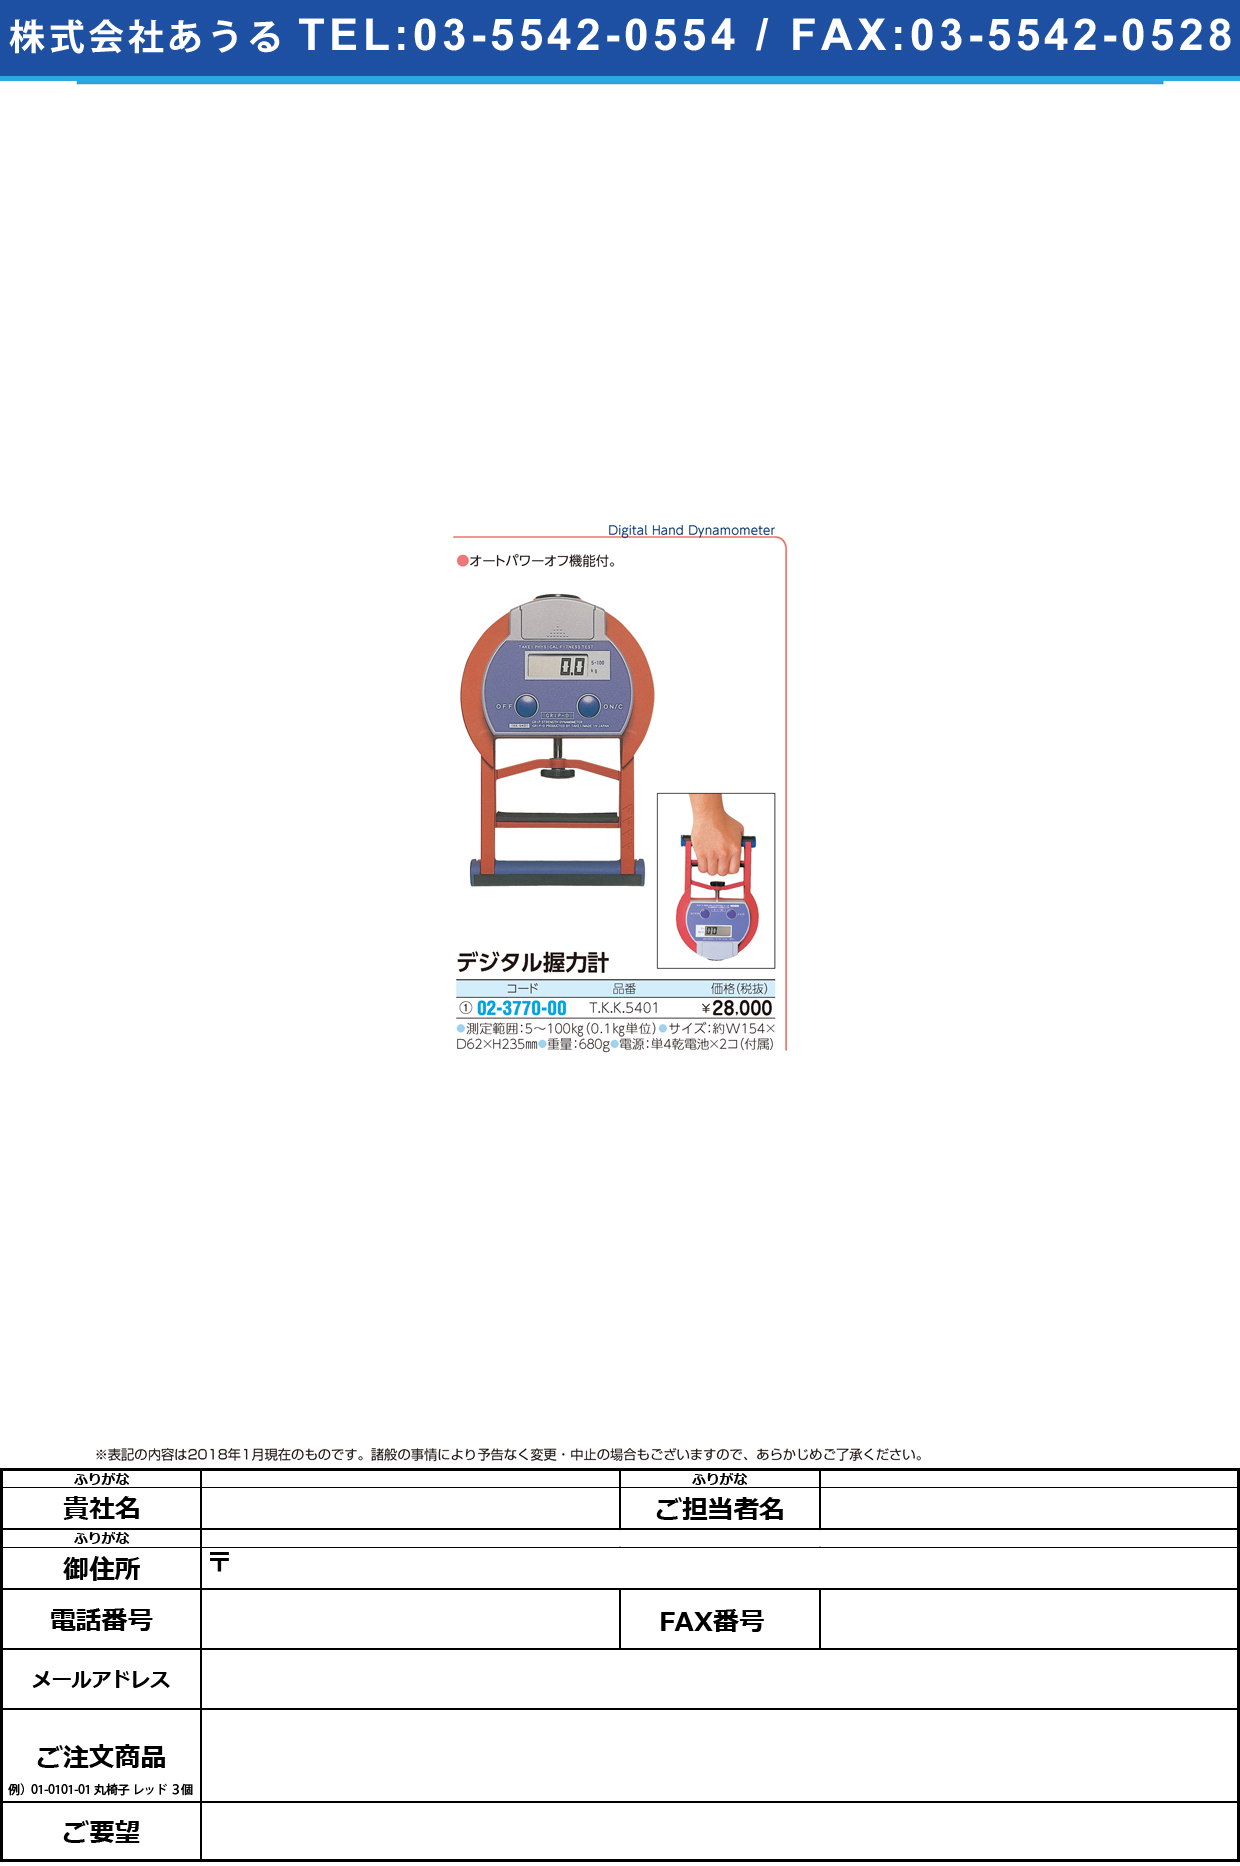 (02-3770-00)デジタル握力計（グリップＤ） TKK-5401 ﾃﾞｼﾞﾀﾙｱｸﾘｮｸｹｲ(竹井機器工業)【1台単位】【2019年カタログ商品】